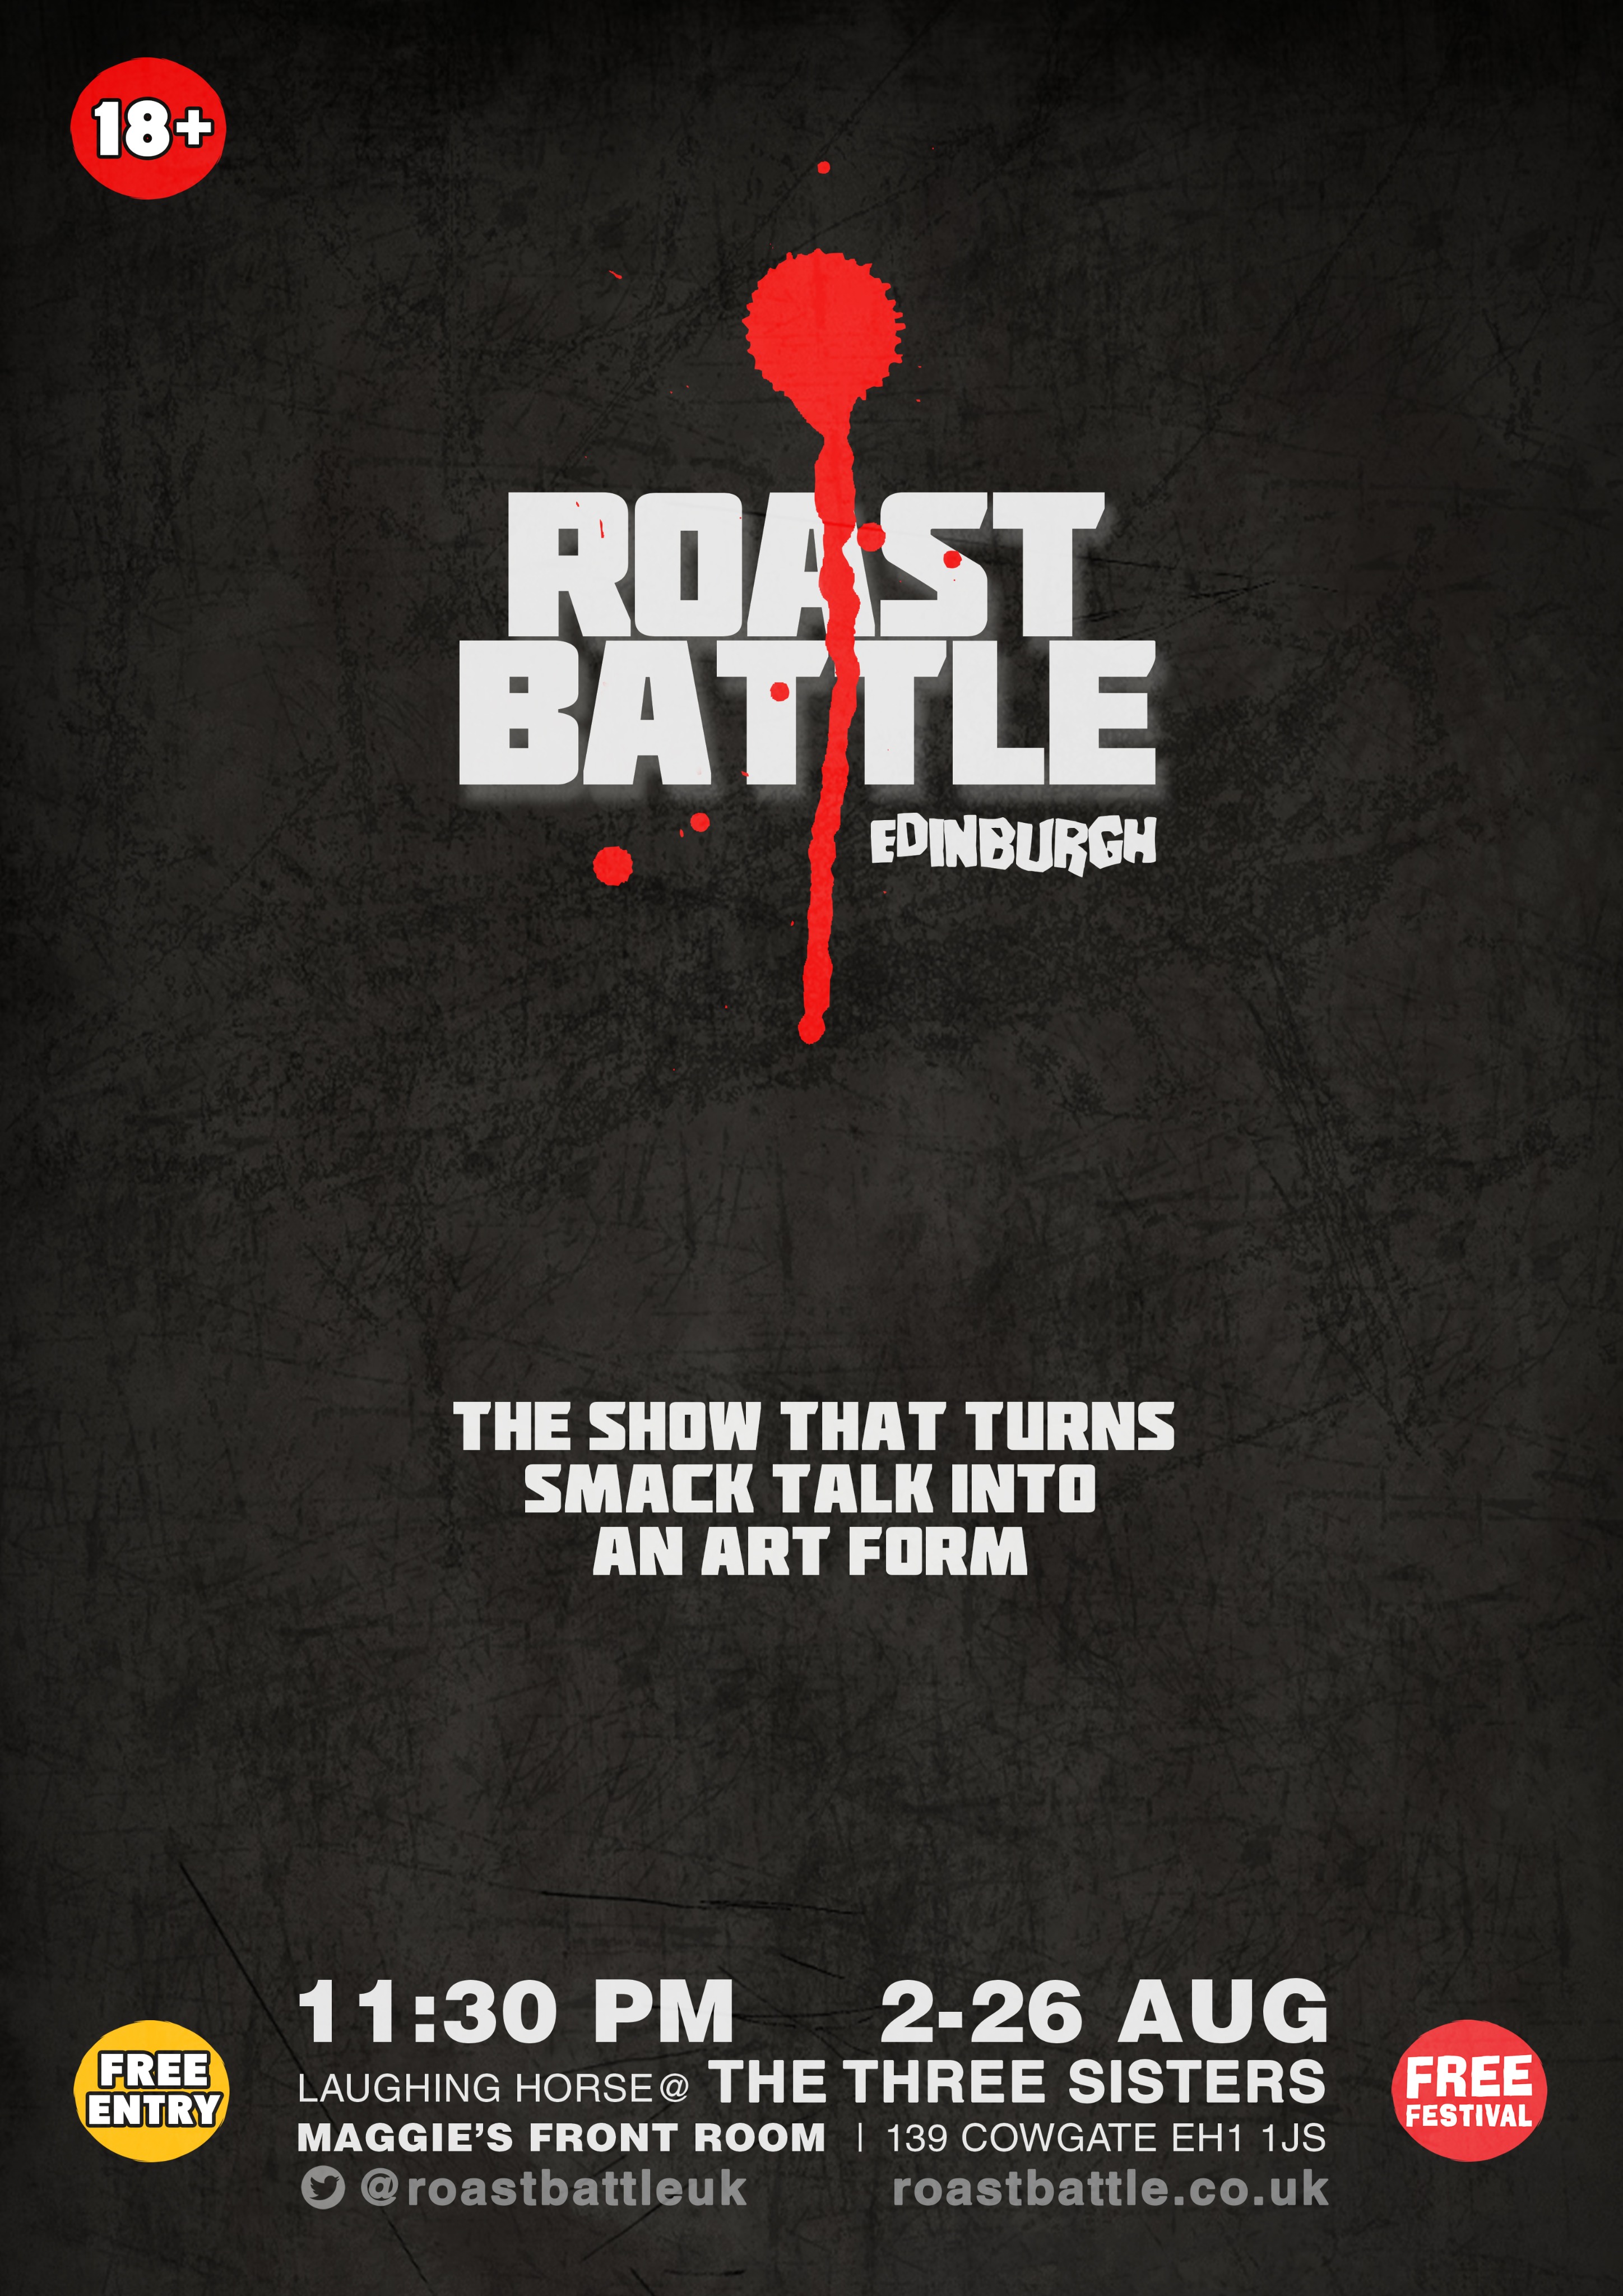 The poster for Roast Battle Edinburgh